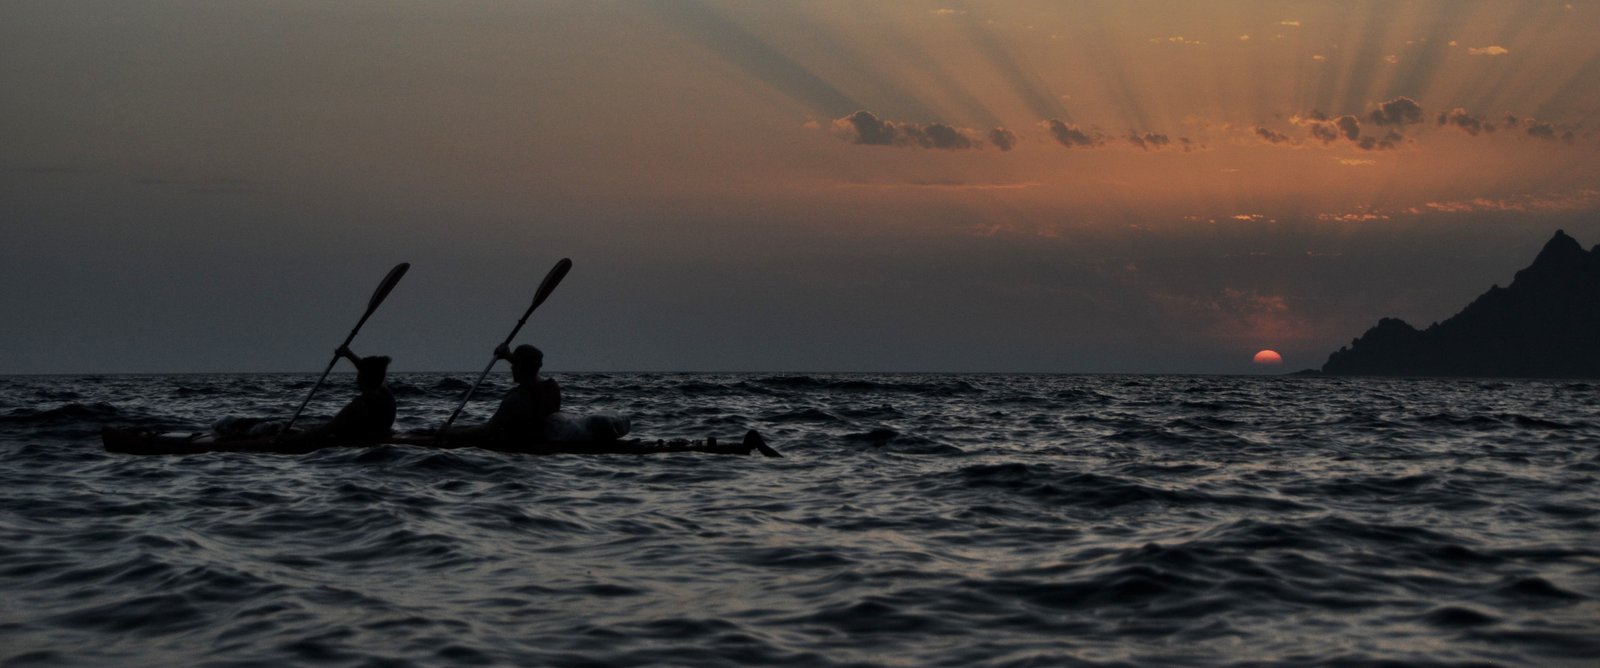 deux personnes sur un kayak biplace lors devant un coucher de soleil